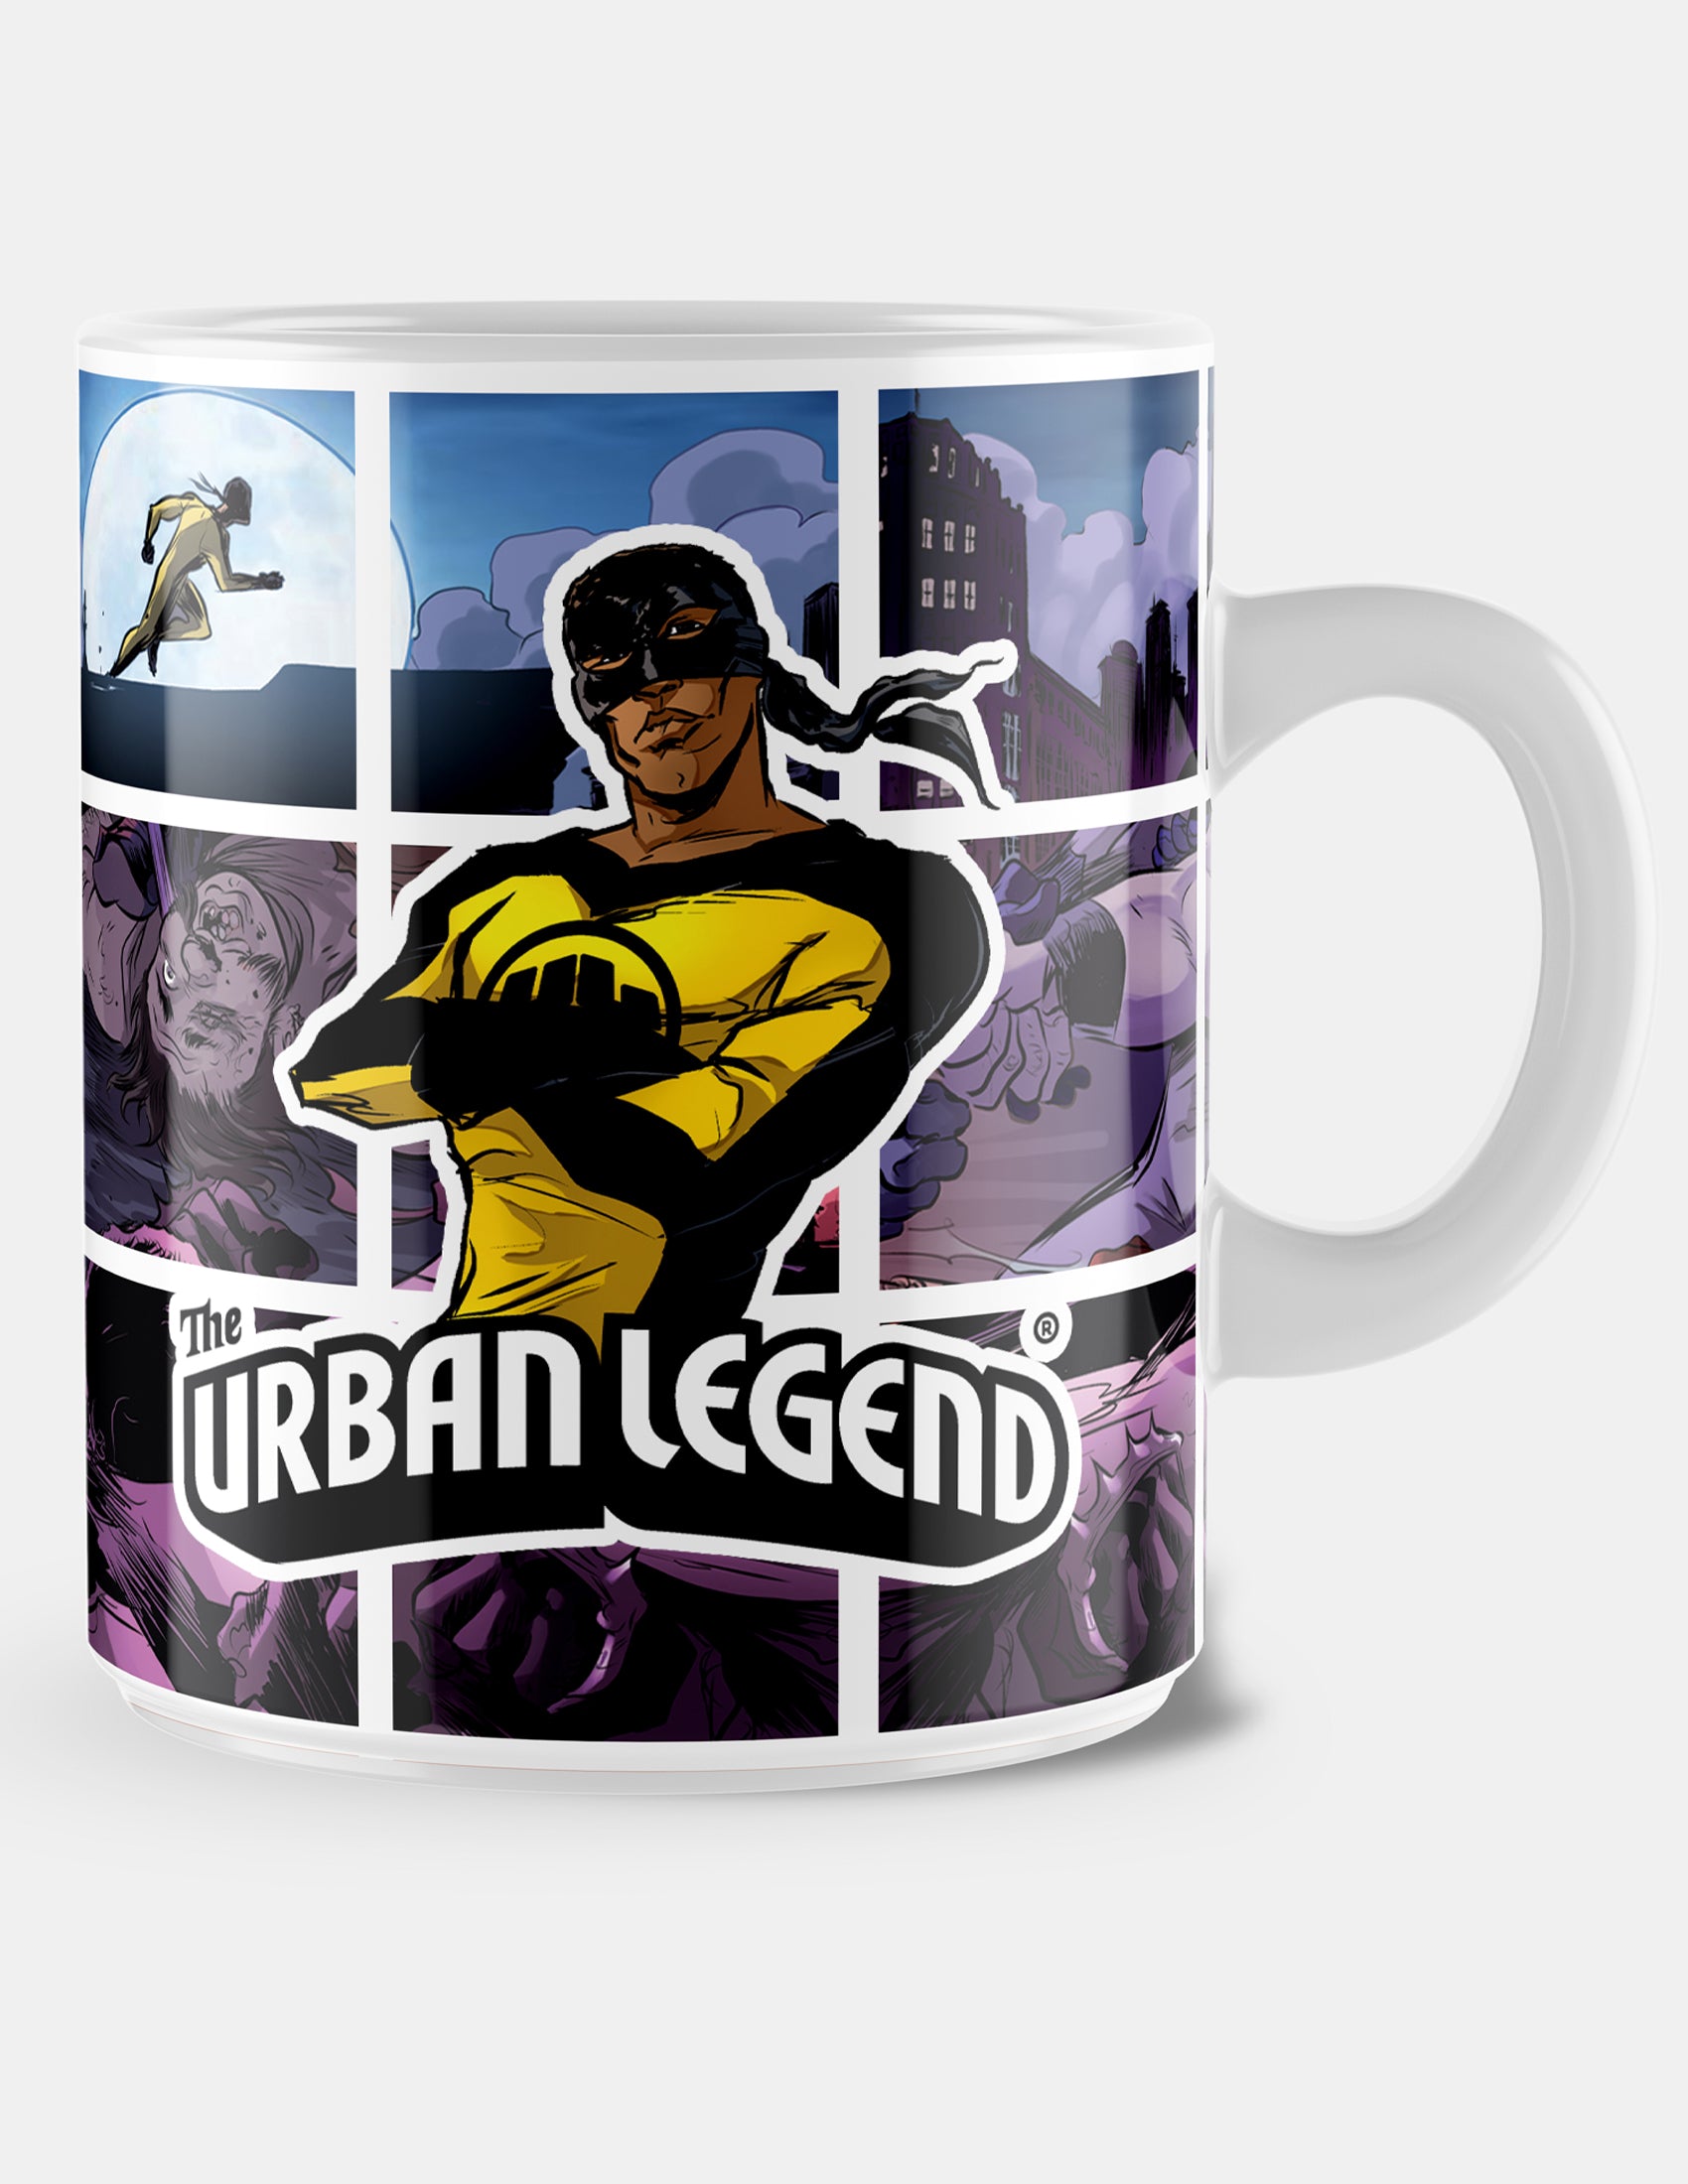 The Urban Legend - Coffee mug (Blue) - 320 ml